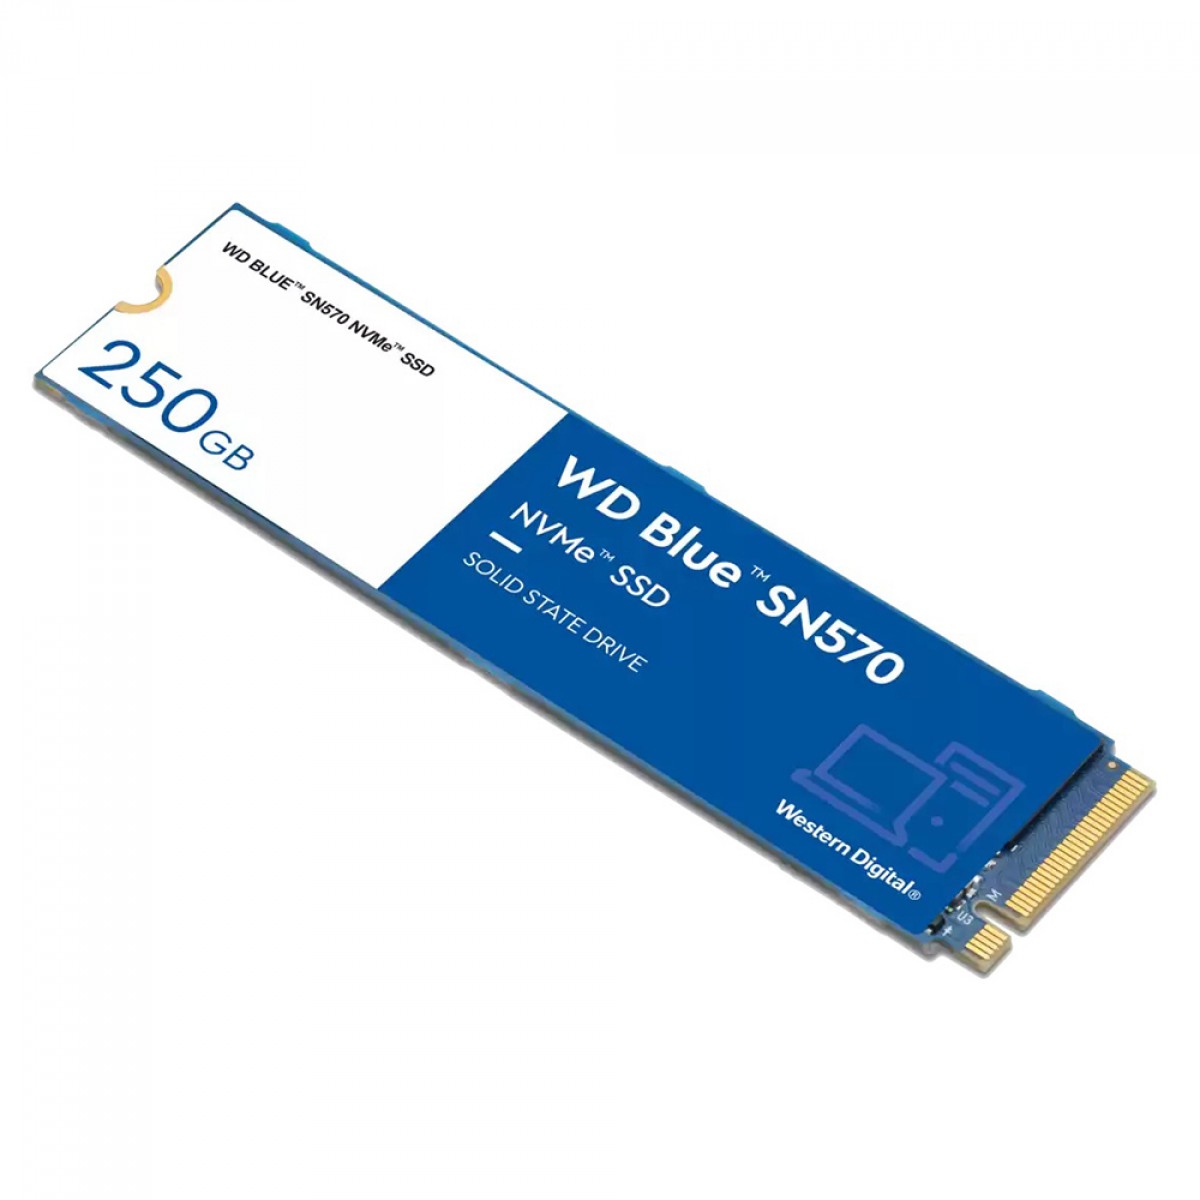 SSD WD Blue SN570 NVMe M.2, 250GB,  PCIe Gen3 x4, NVMe v1.4, Leitura 3300MBs e Gravação 1200MBs, WDS250G3B0C